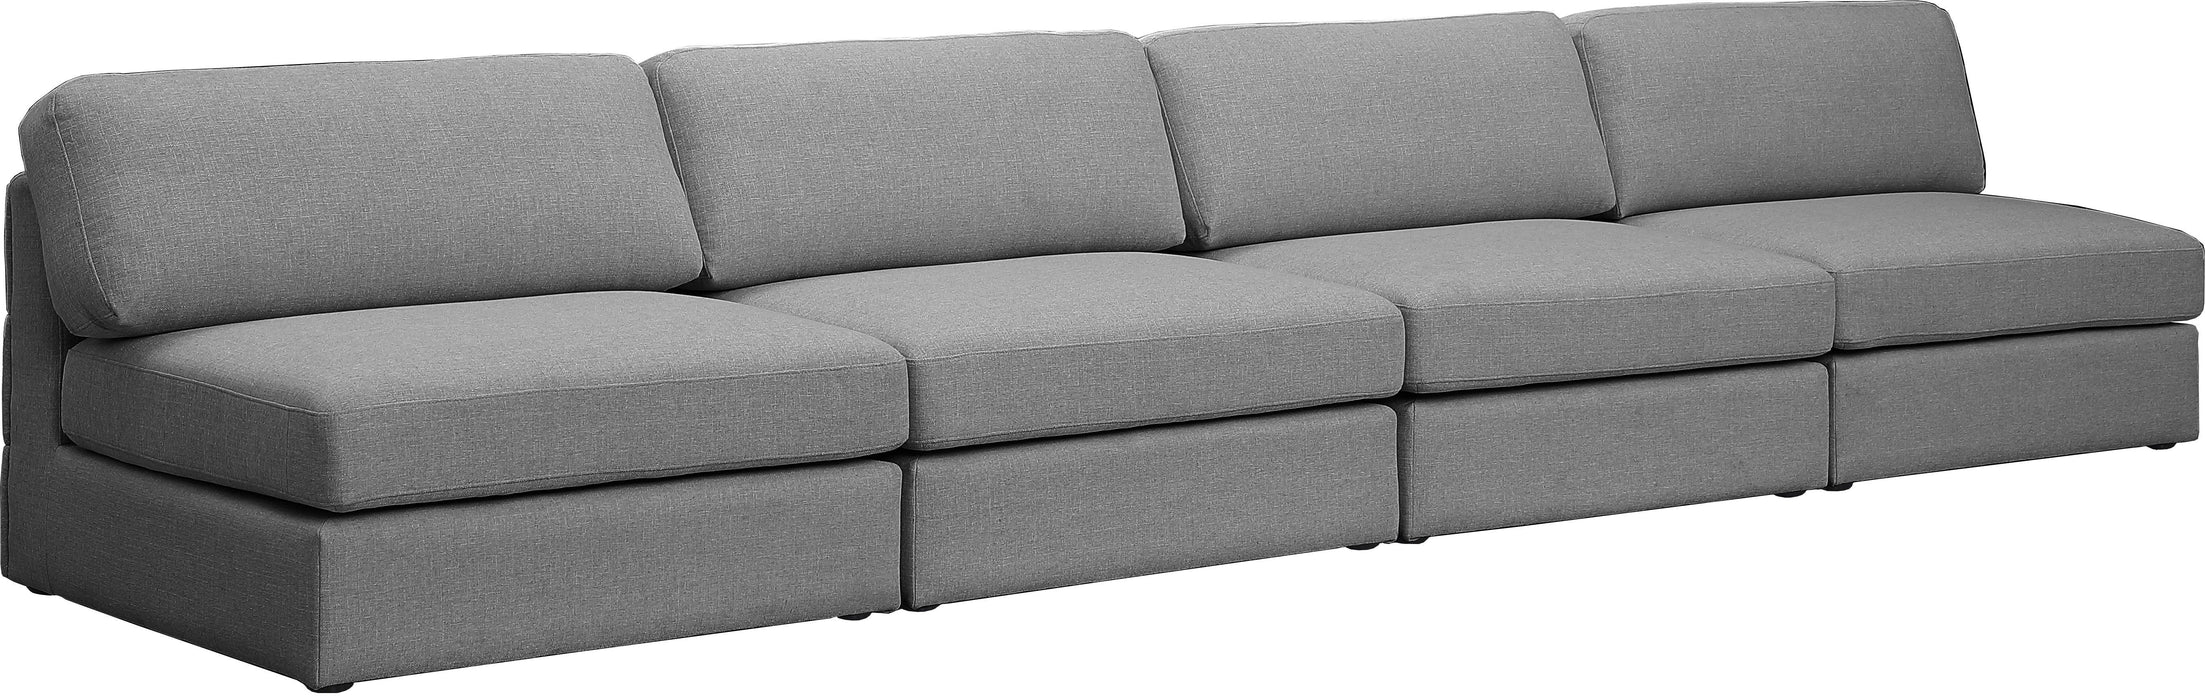 Beckham - Modular 4 Seats Armless Sofa